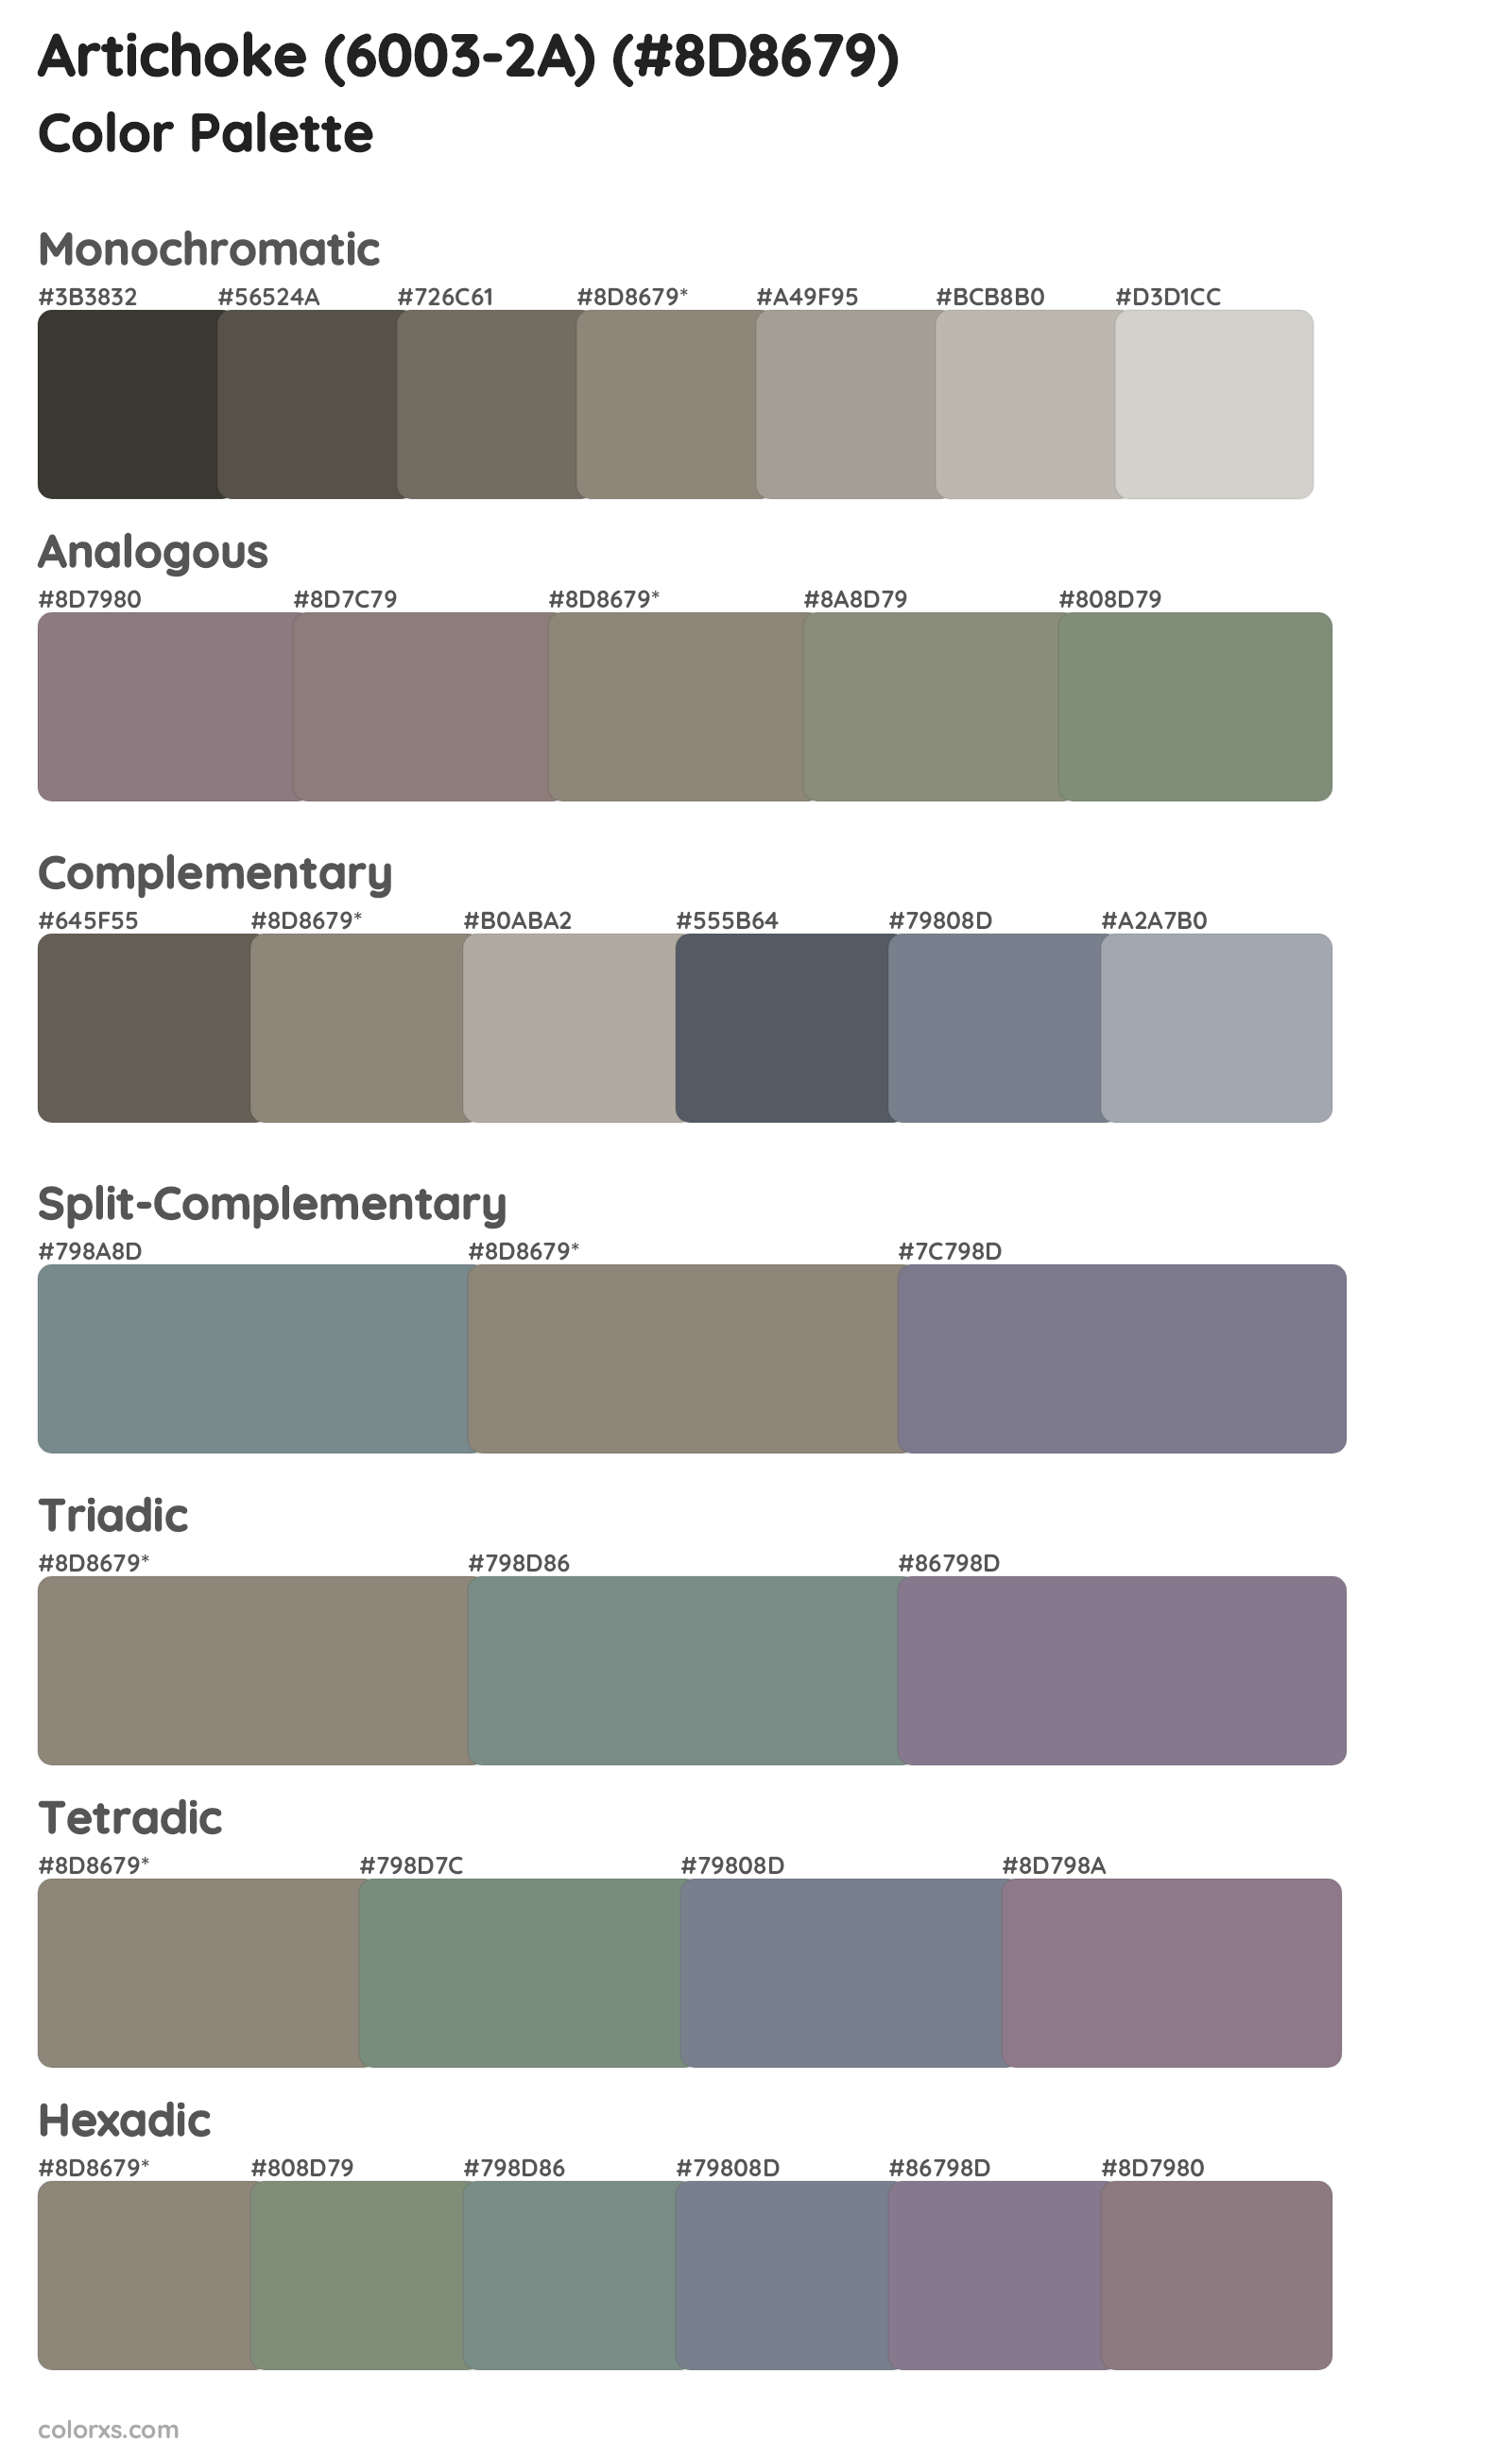 Artichoke (6003-2A) Color Scheme Palettes